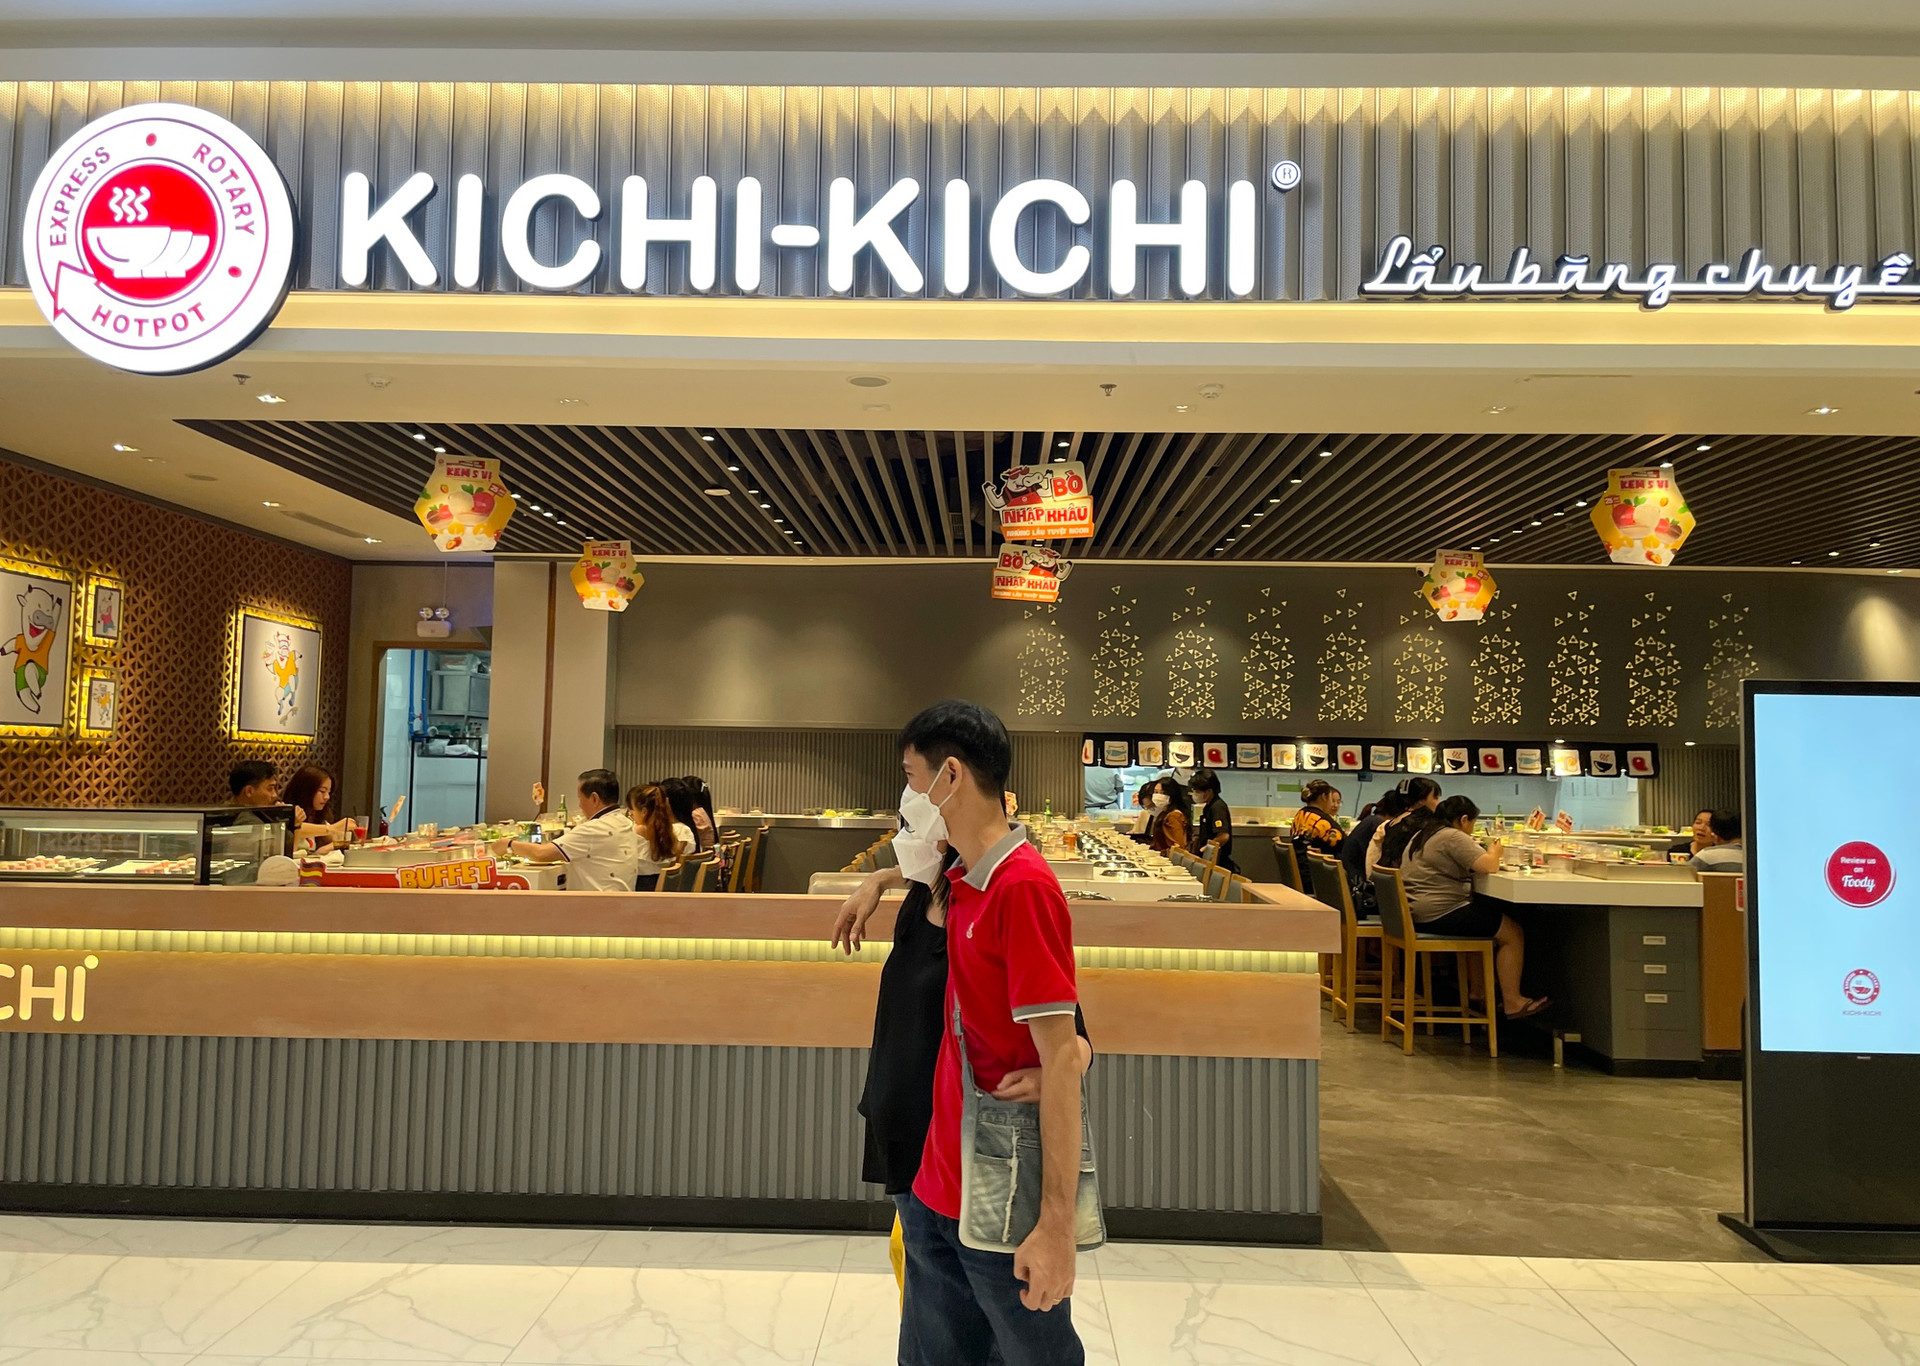 Bảng giá Kichi Kichi & Những kinh nghiệm nằm lòng khi...